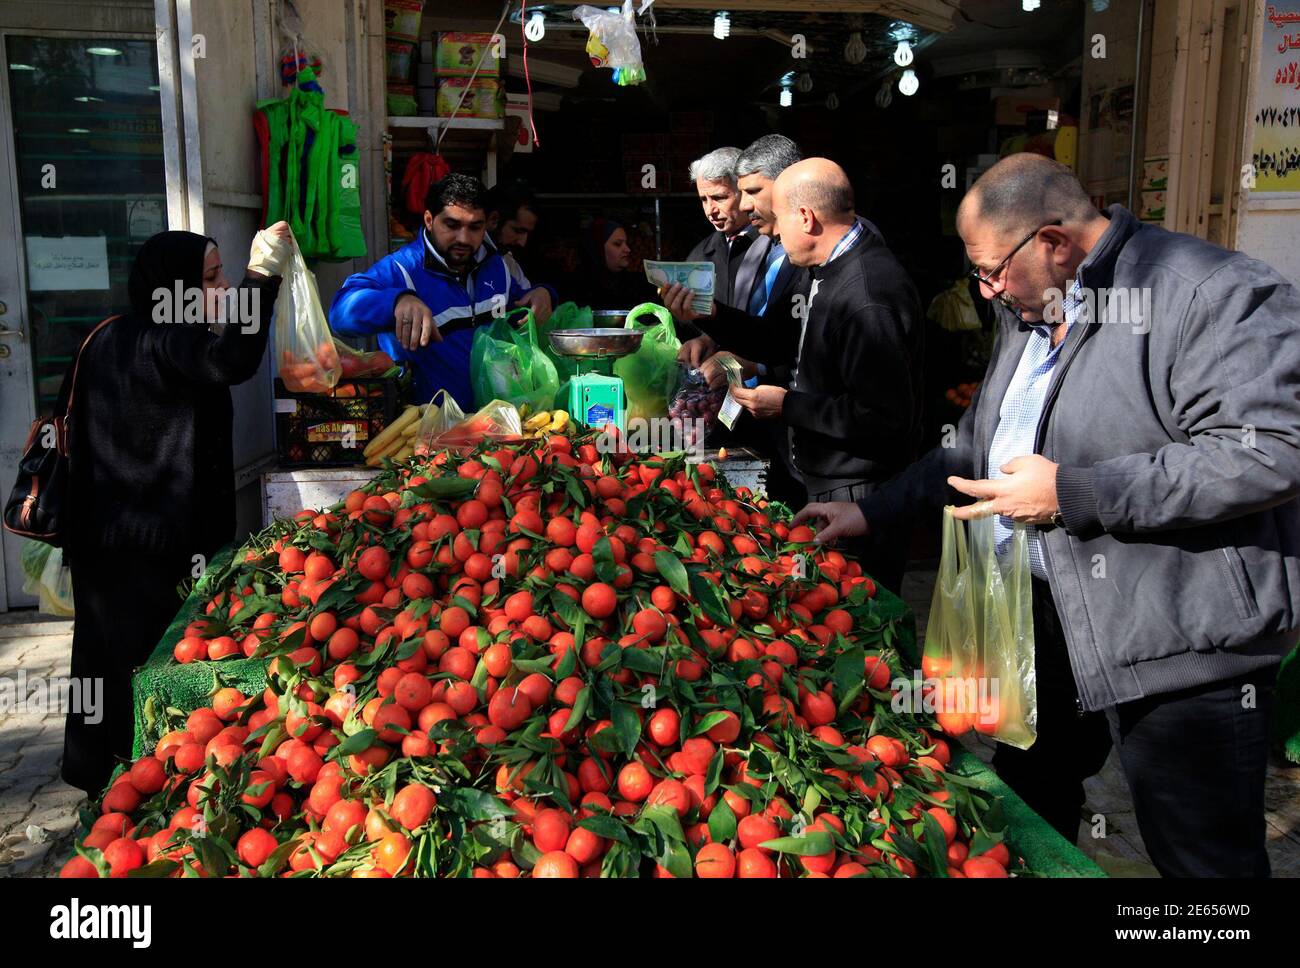 La gente compra comestibles en una tienda en Bagdad el 16 de enero de 2014. Al día siguiente de uno de los días más sangrientos de Irak durante meses, los compradores y conductores llenaron las calles de Bagdad el jueves, conscientes de que la muerte puede golpear en cualquier lugar, en cualquier momento. Al menos ocho bombas golpearon la capital, la mayoría en los distritos chiítas, el miércoles, matando a 40 personas e hiriendo a 88, mientras que los ataques en otros lugares llevaron el número de muertos a 78. REUTERS/Ahmed Saad (IRAK - Tags: SOCIEDAD CIVIL MALESTAR) Foto de stock